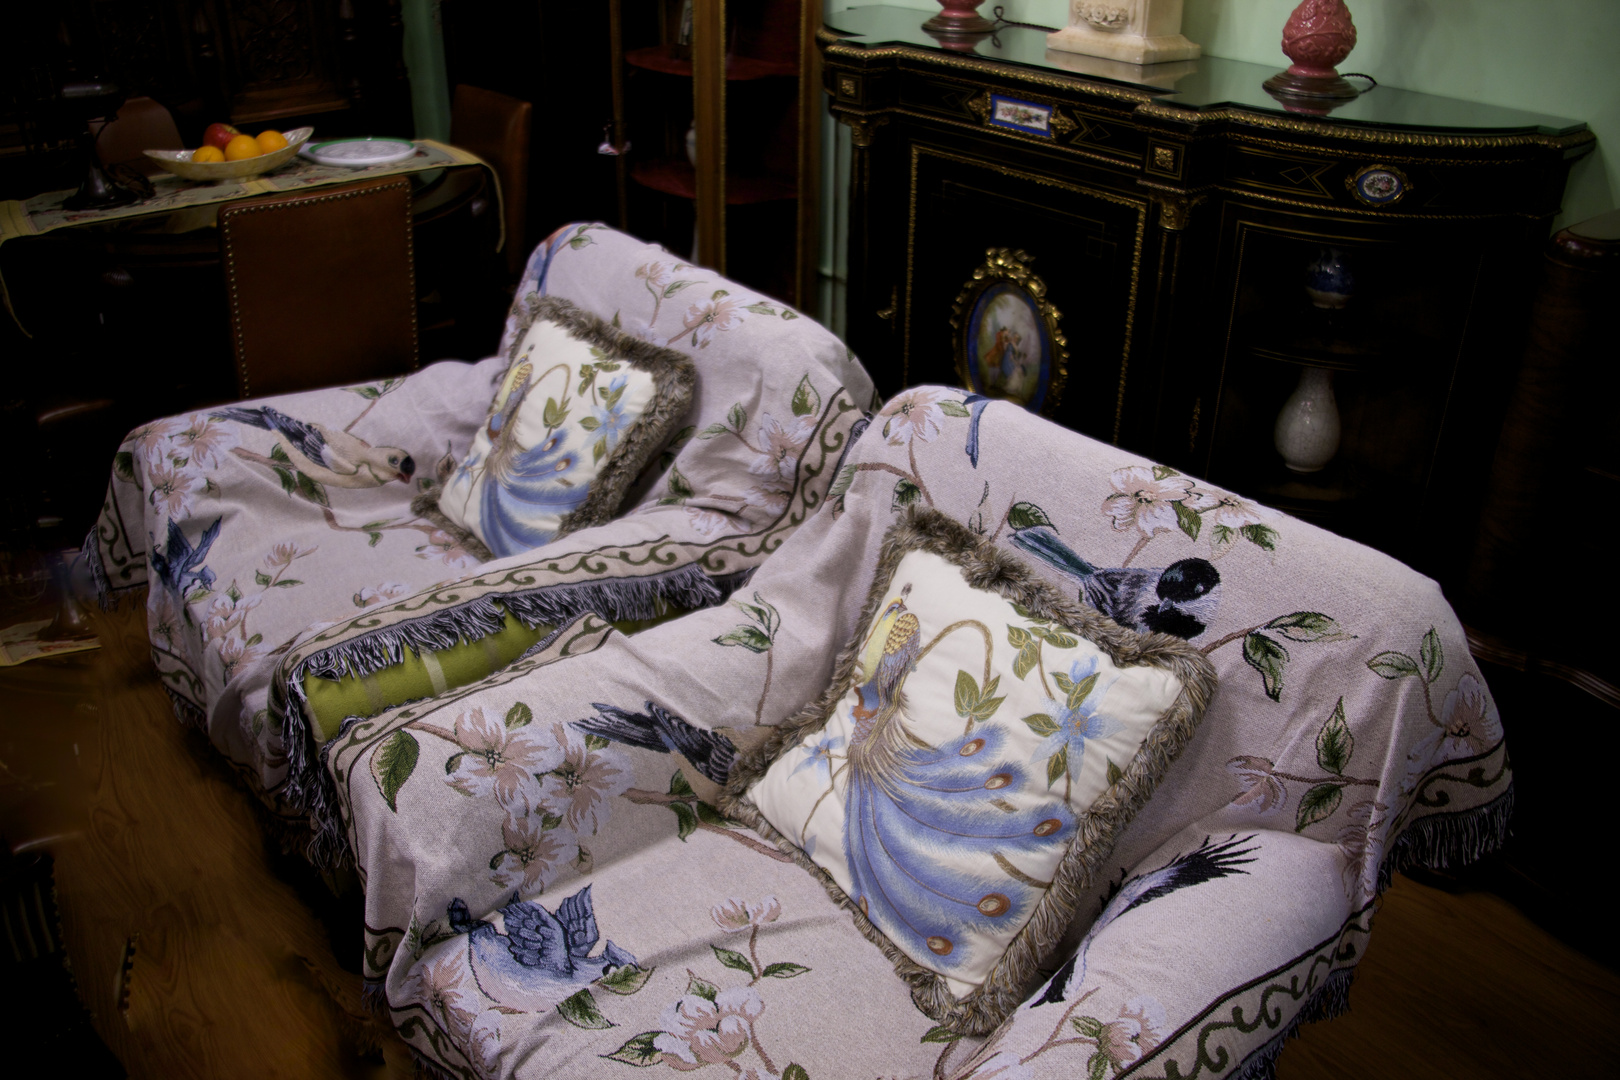 Gandmother Smai Ling's sofa